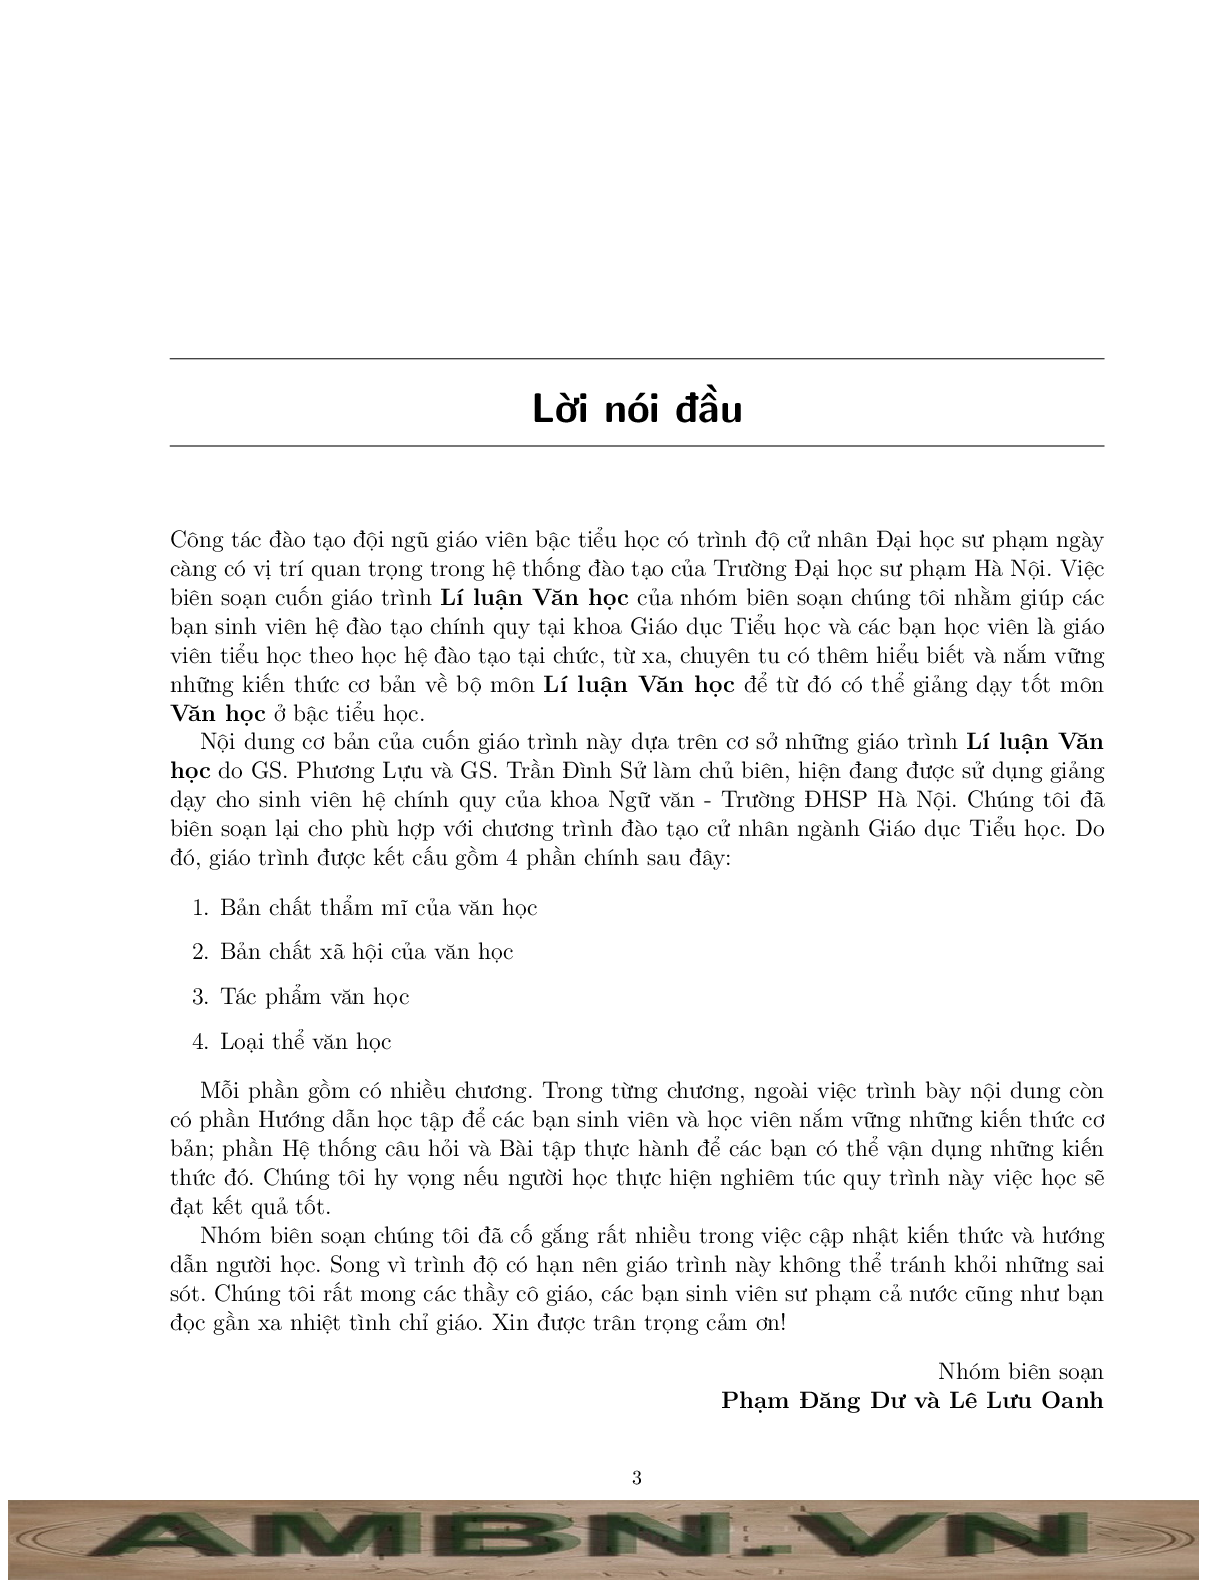 Giáo trình Lý luận Văn học 1 (Lê Lưu Oanh - Phạm Đăng Dư) | Đại học Sư Phạm Hà Nội (trang 3)